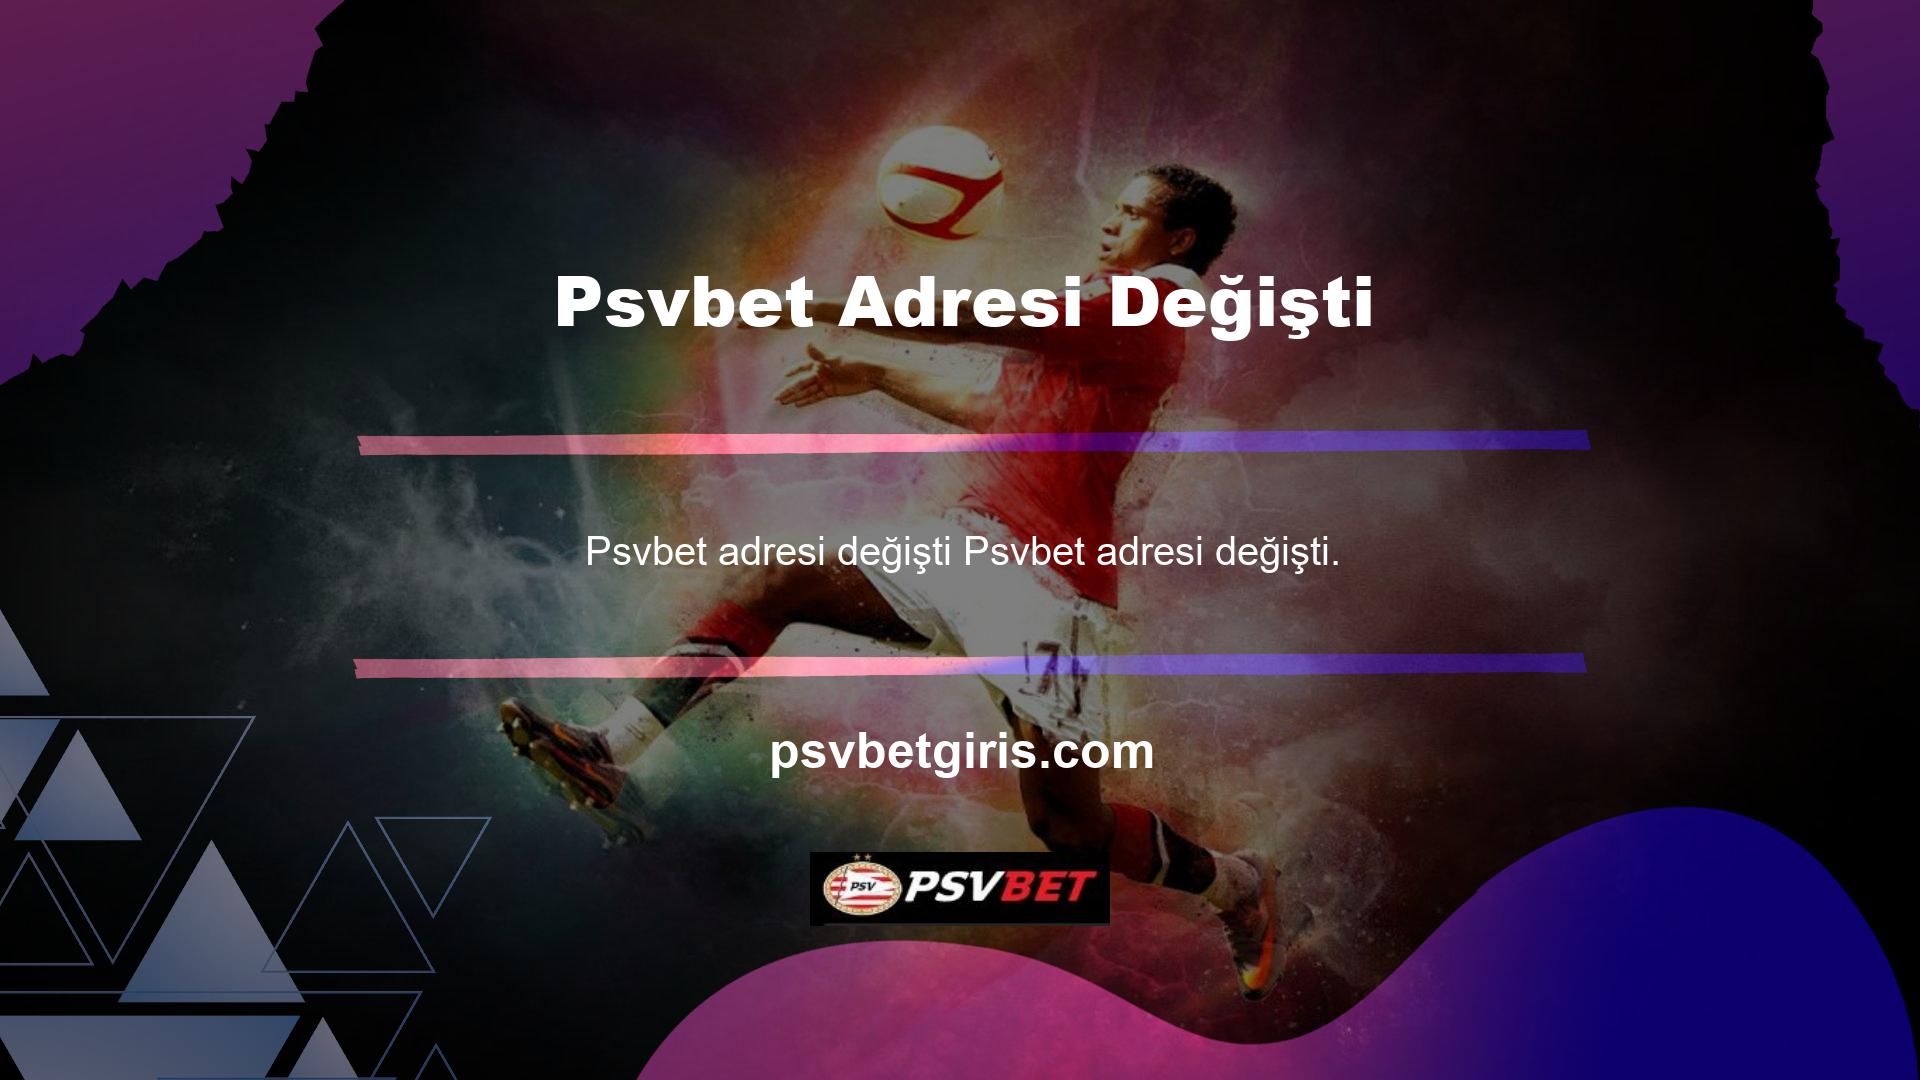 Psvbet markası, uzun yıllardan beri Türkiye pazarına online olarak hizmet veren ve Türkçe dil seçeneği de bulunan yabancı bir casino sitesidir